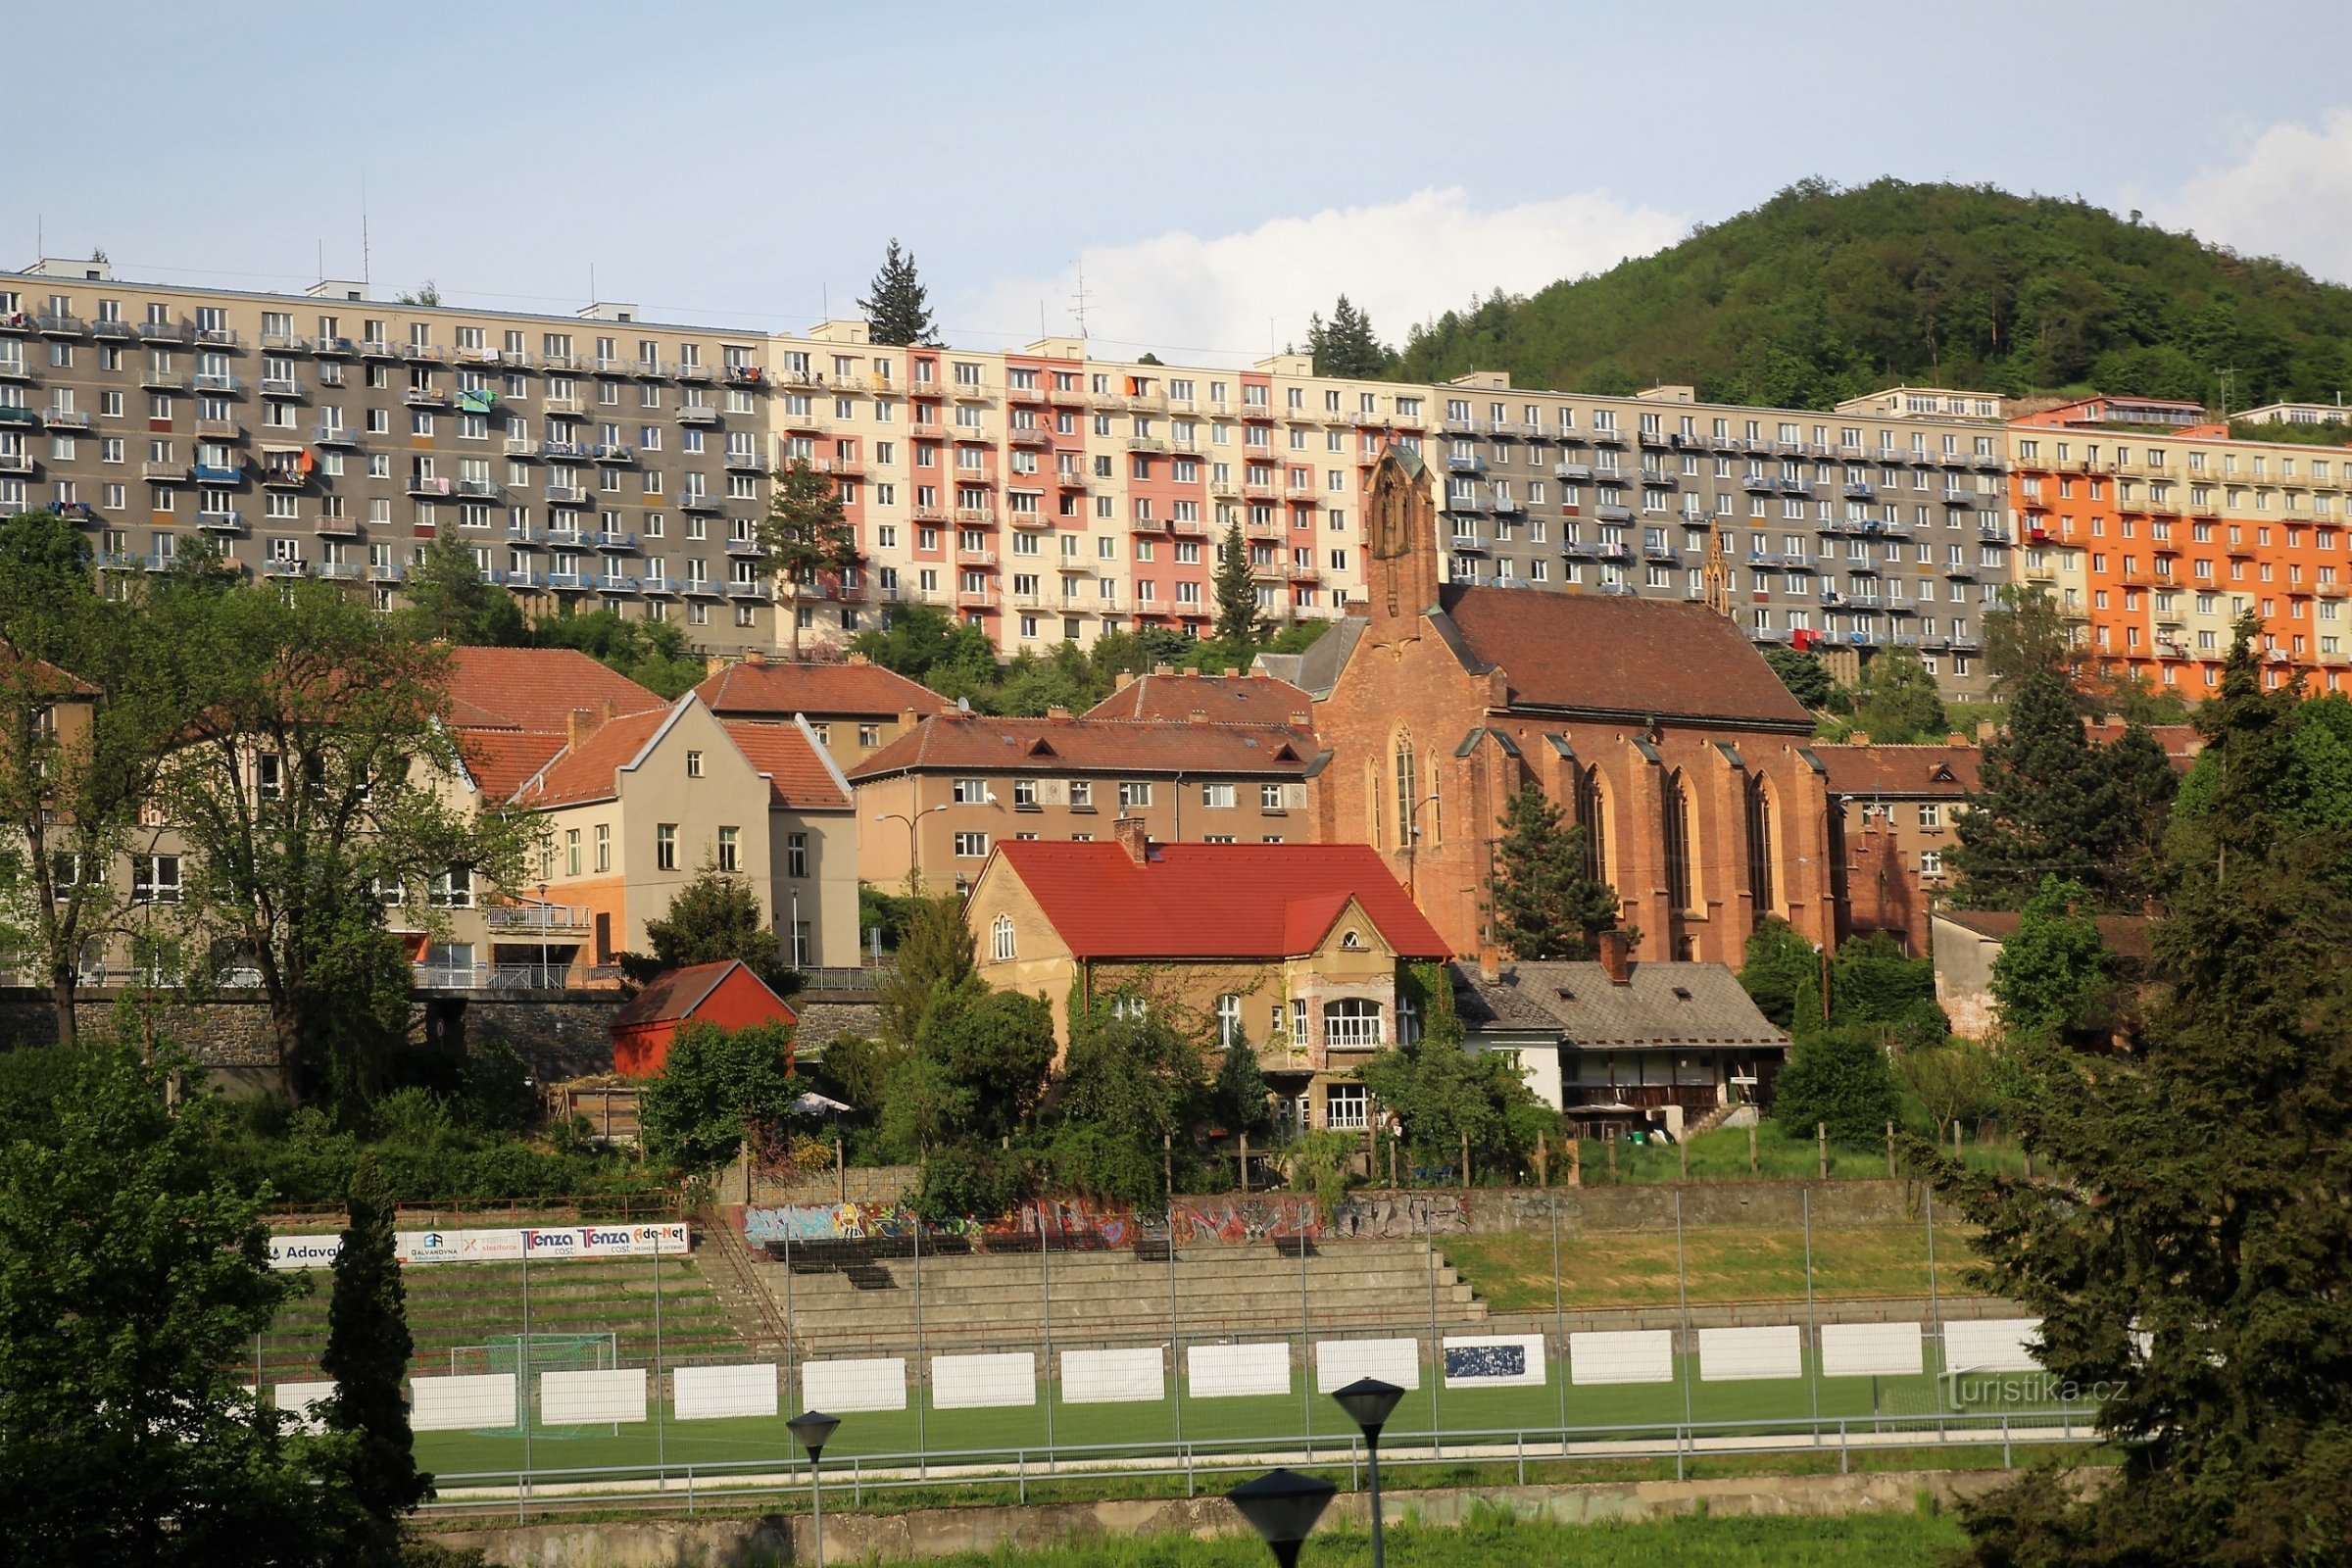 Панорама Градчанського панельного будинку на вулиці Коменського, перед ним церква св. Барбара